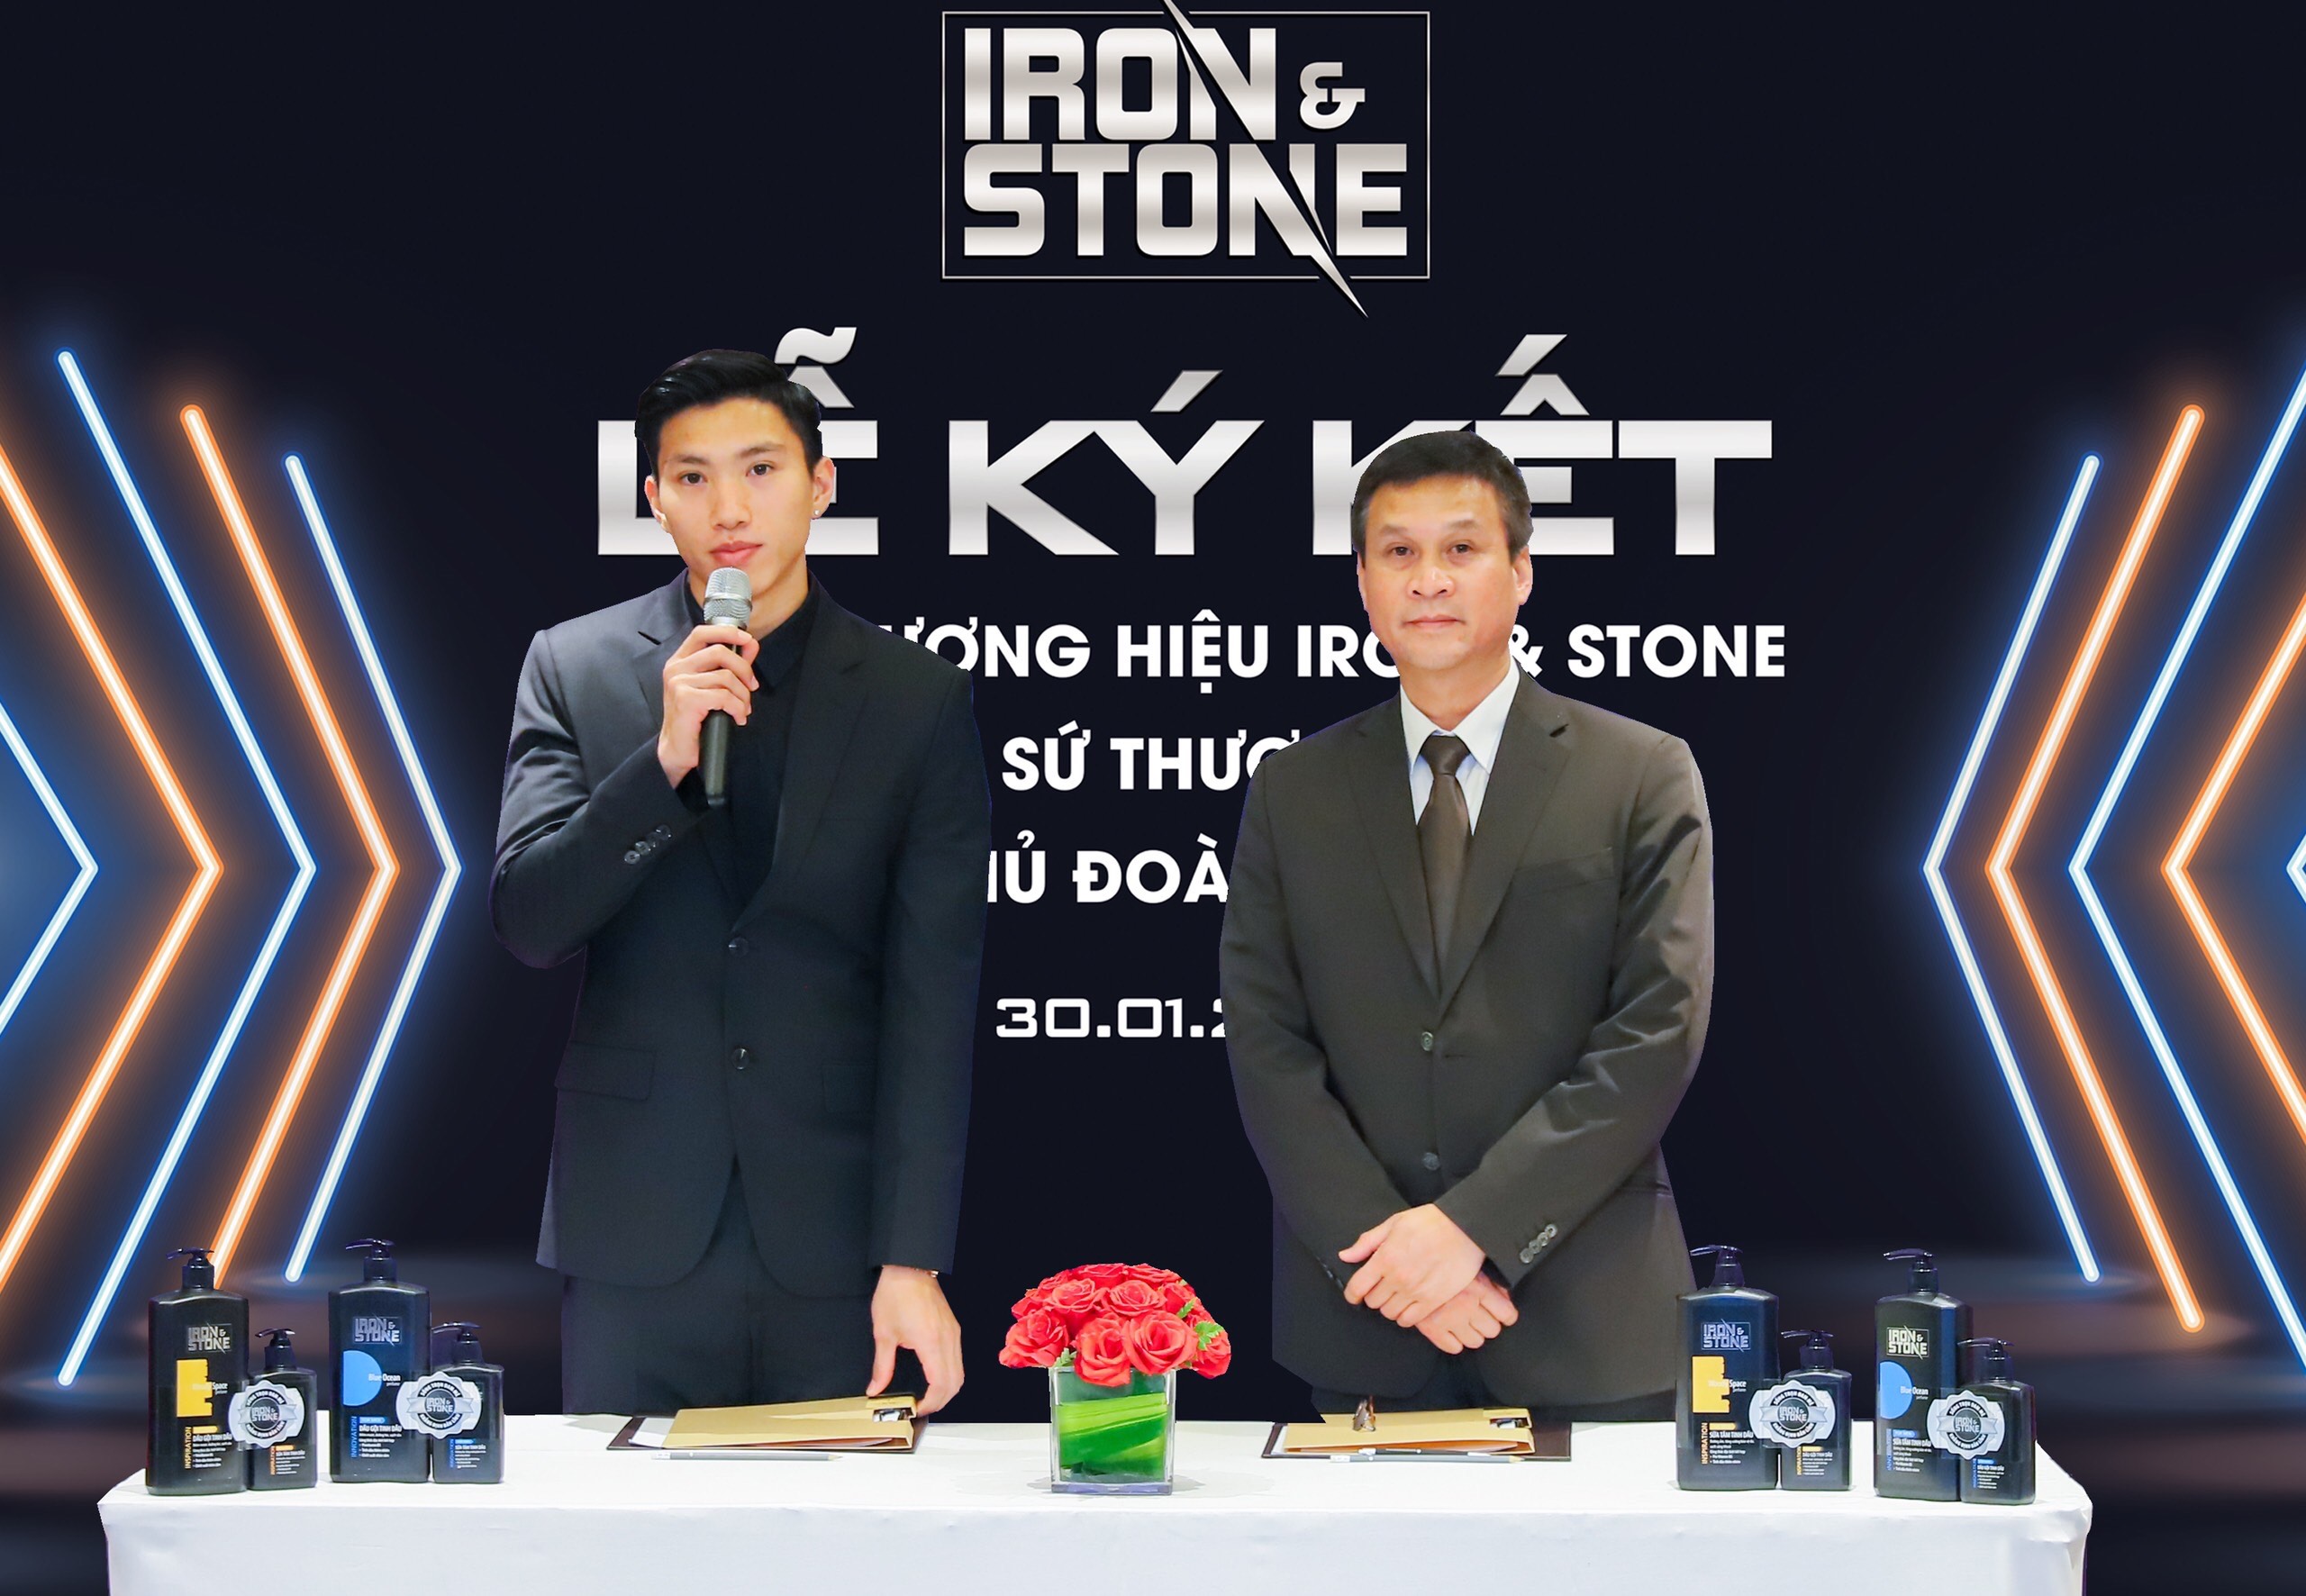 Đoàn Văn Hậu chia sẻ cảm xúc khi trở thành Đại sứ thương hiệu Iron & Stone